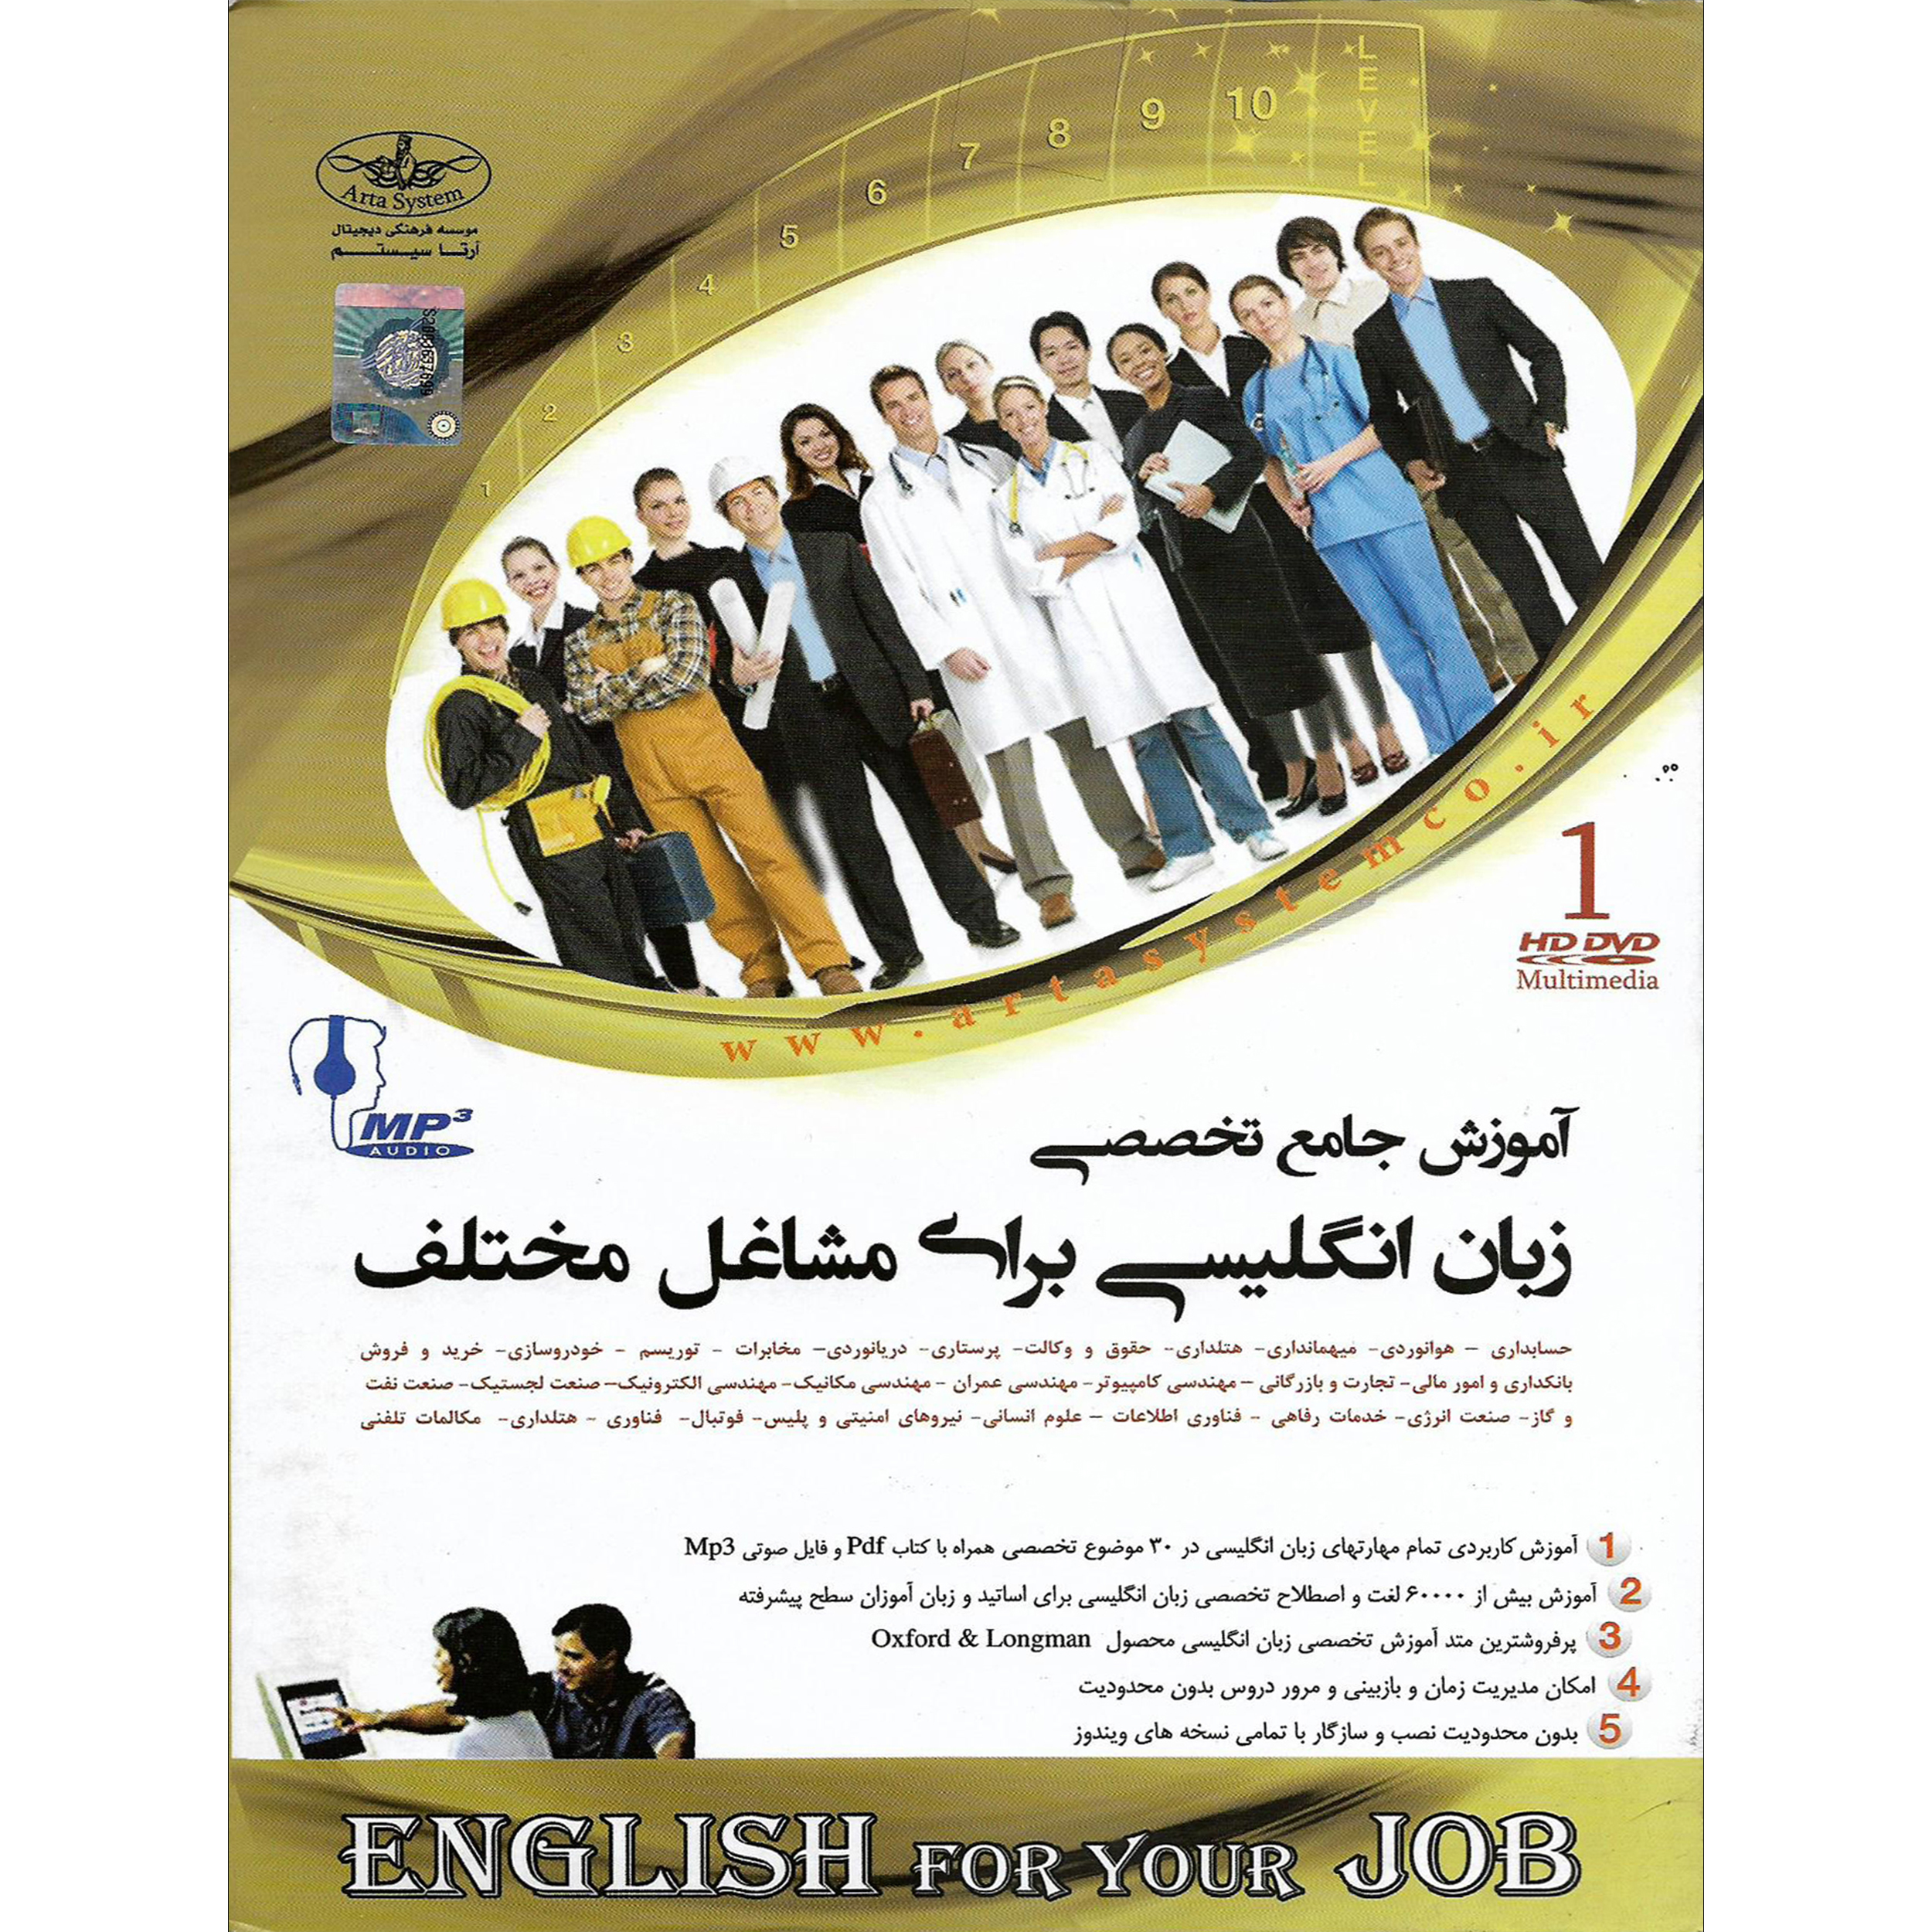 آموزش جامع تخصصی زبان انگلیسی برای مشاغل مختلف نشر موسسه فرهنگی دیجیتال آرتا سیستم